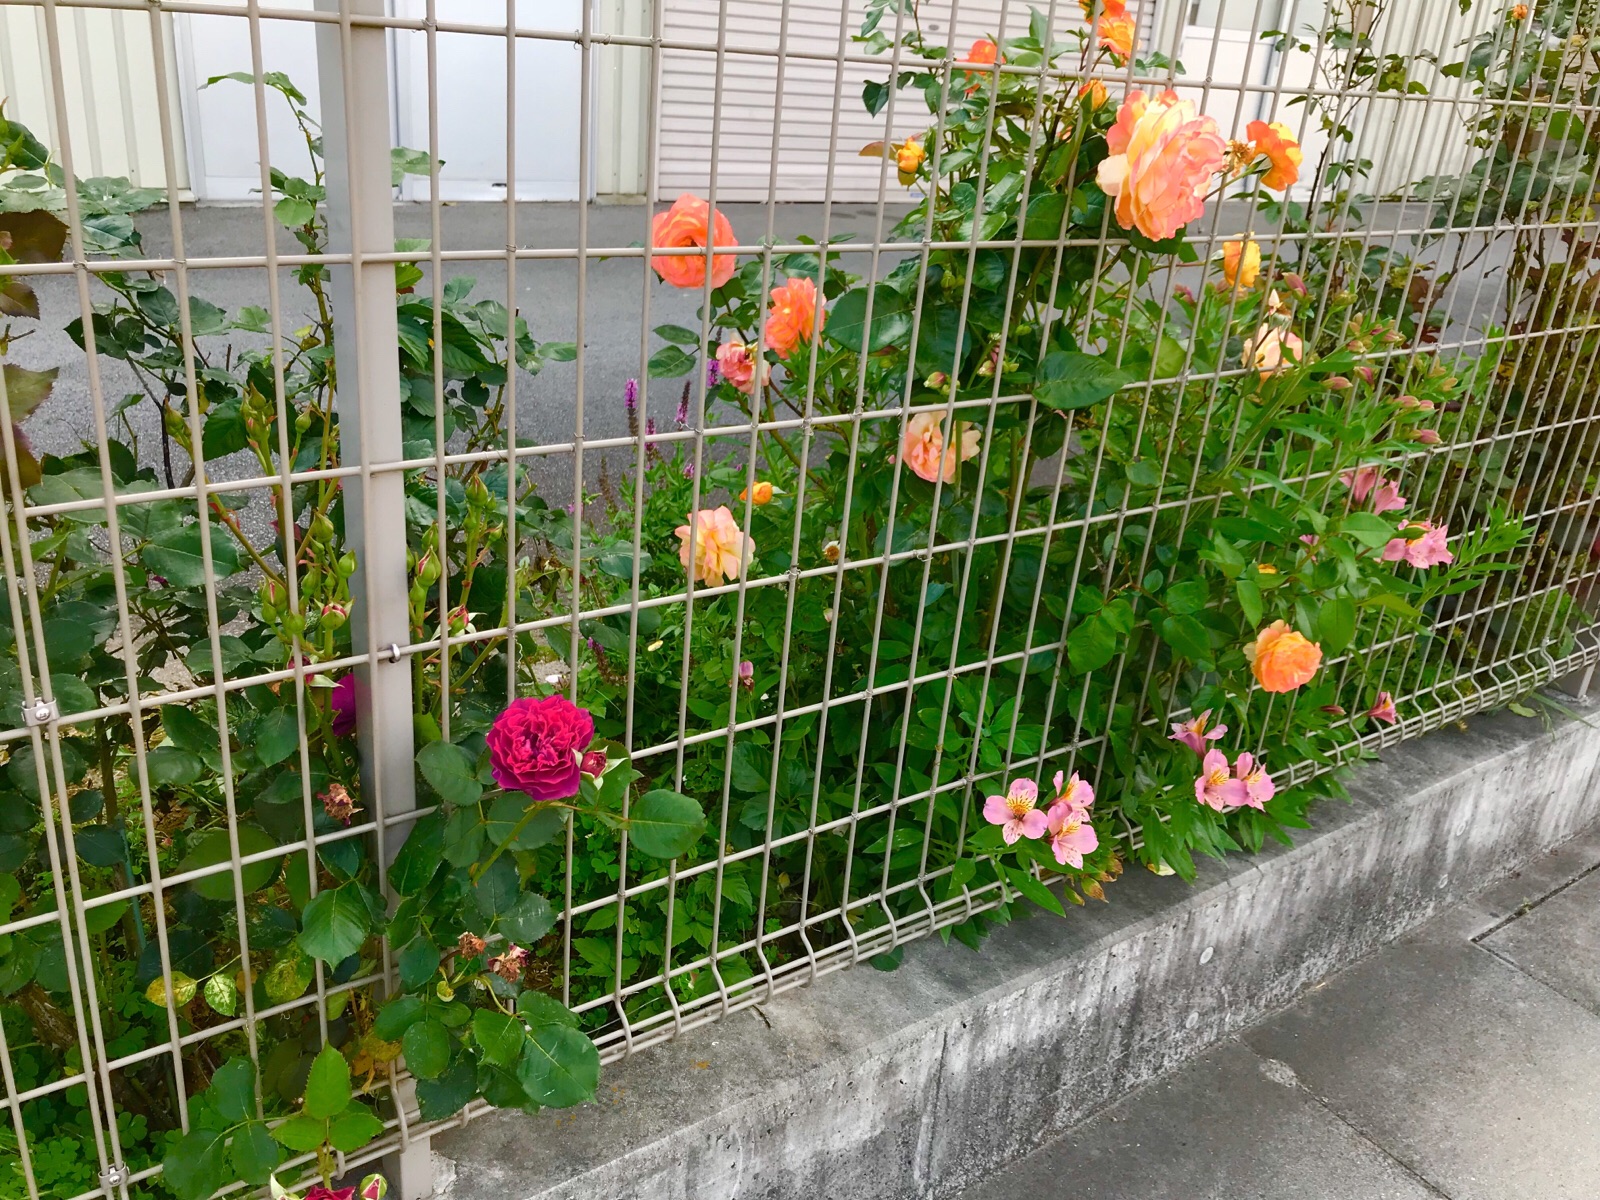 フェンスの 垣根のバラの花です シラネパック 宝石会社様用 ビニール製品販売 抜き型枠販売 ハードボード販売 さくらんぼ500g800g1kg化粧箱ウレタン付き販売